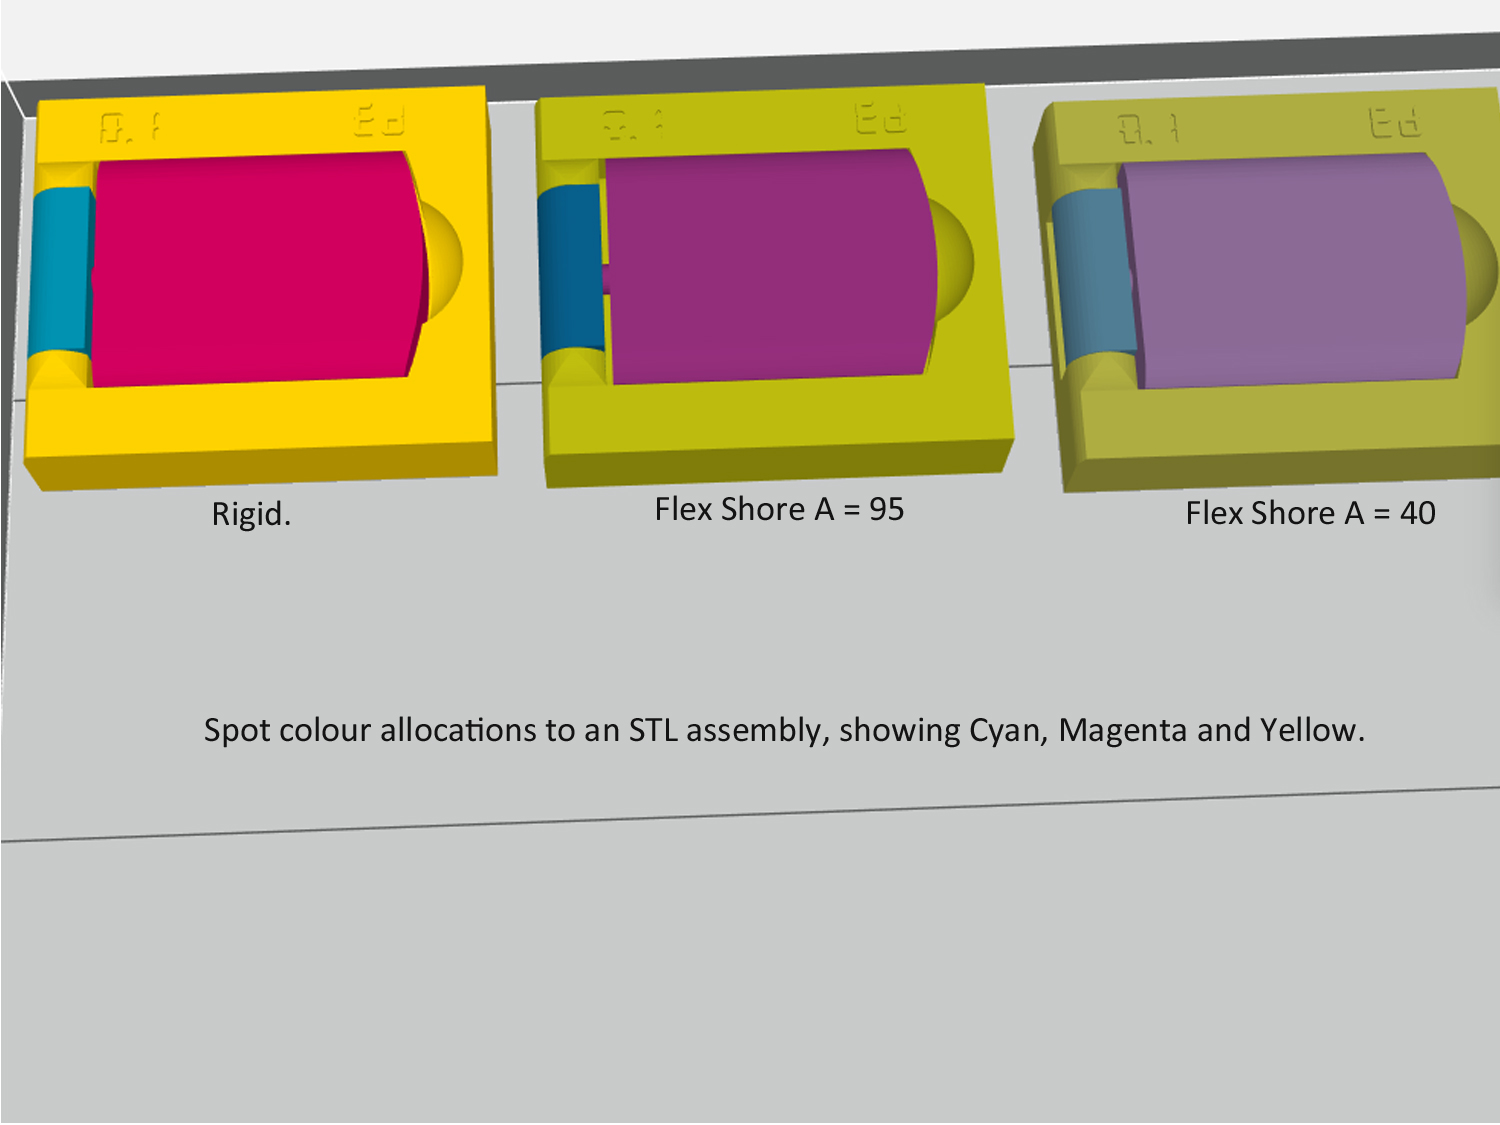 Colour variations for rigid v flexible 3d printed parts.